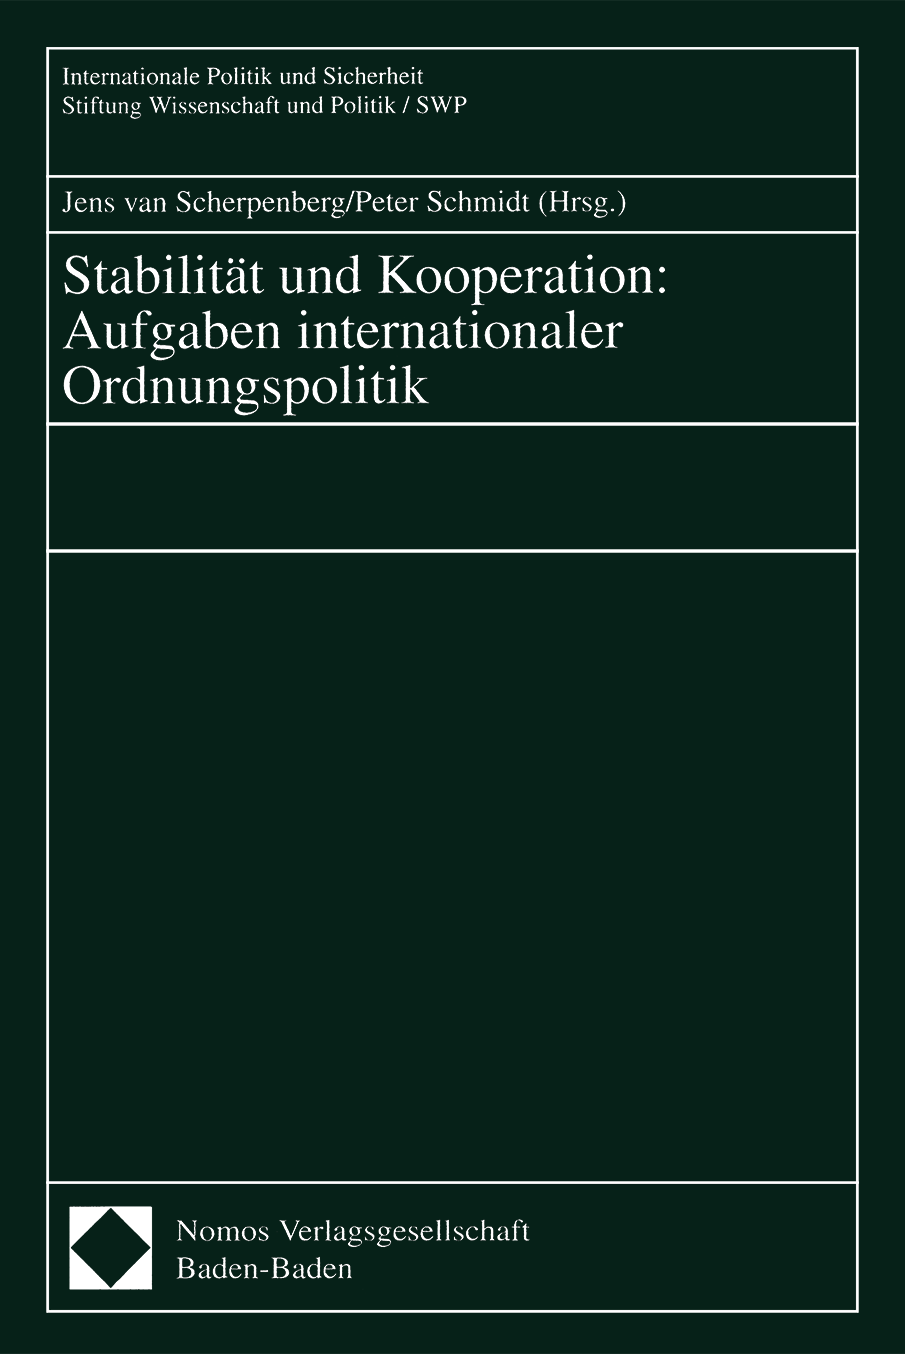 Stabilität und Kooperation: Aufgaben internationaler Ordnungspolitik, vol. 50, 2000, p. 176-192;